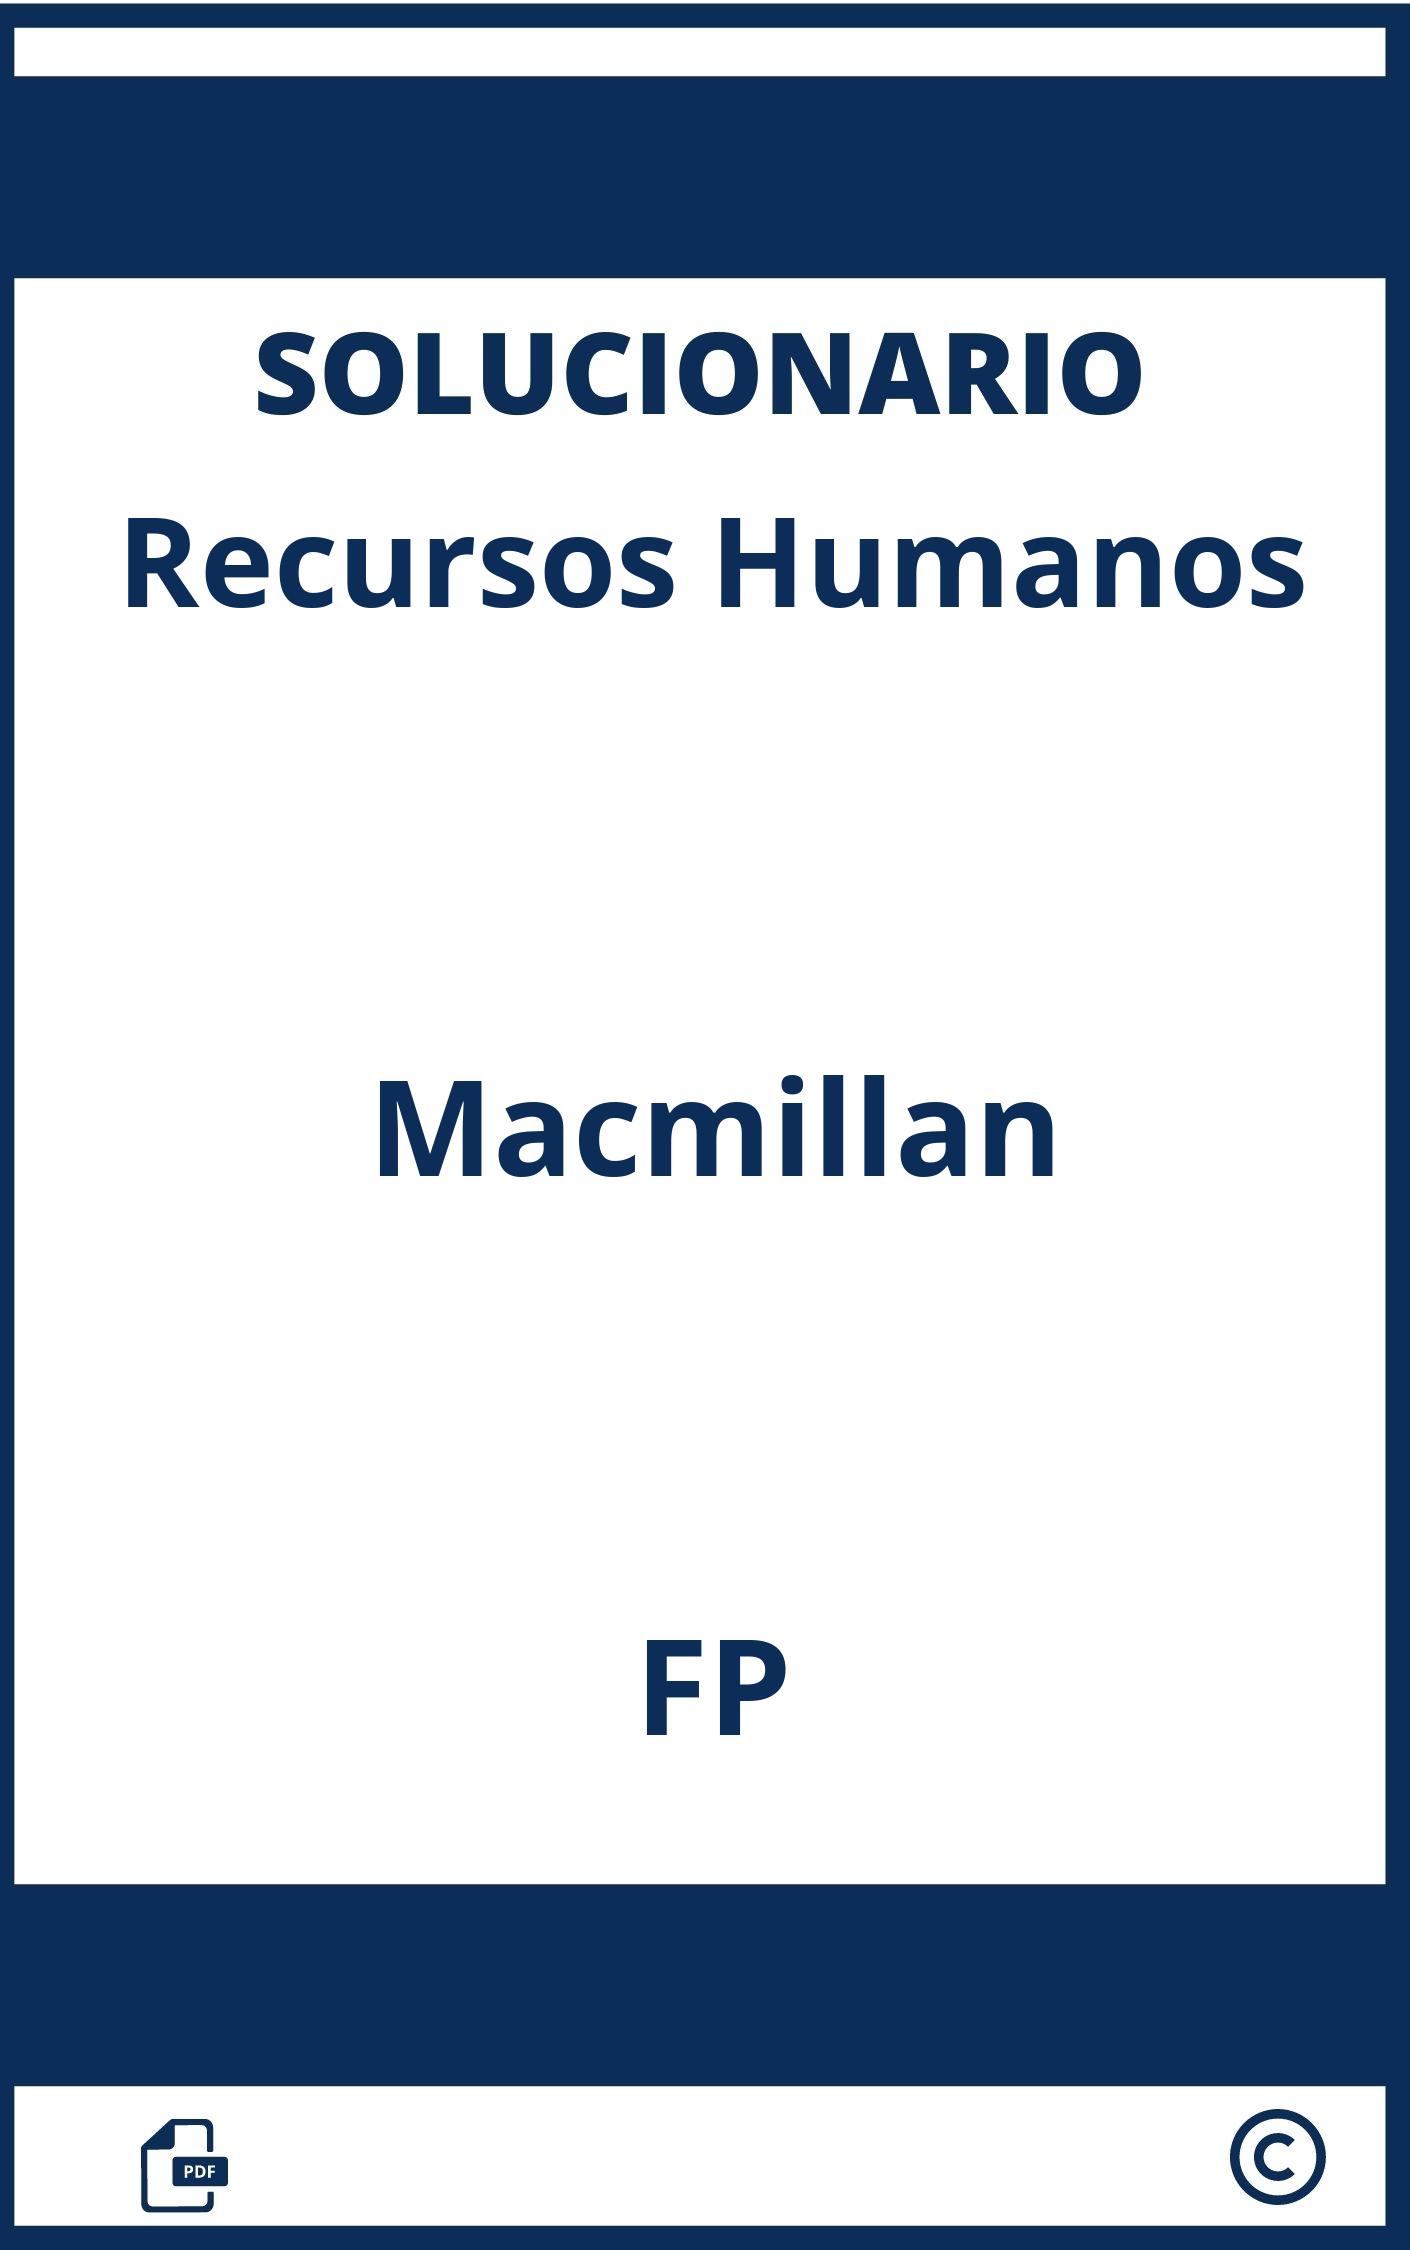 Solucionario Recursos Humanos Macmillan